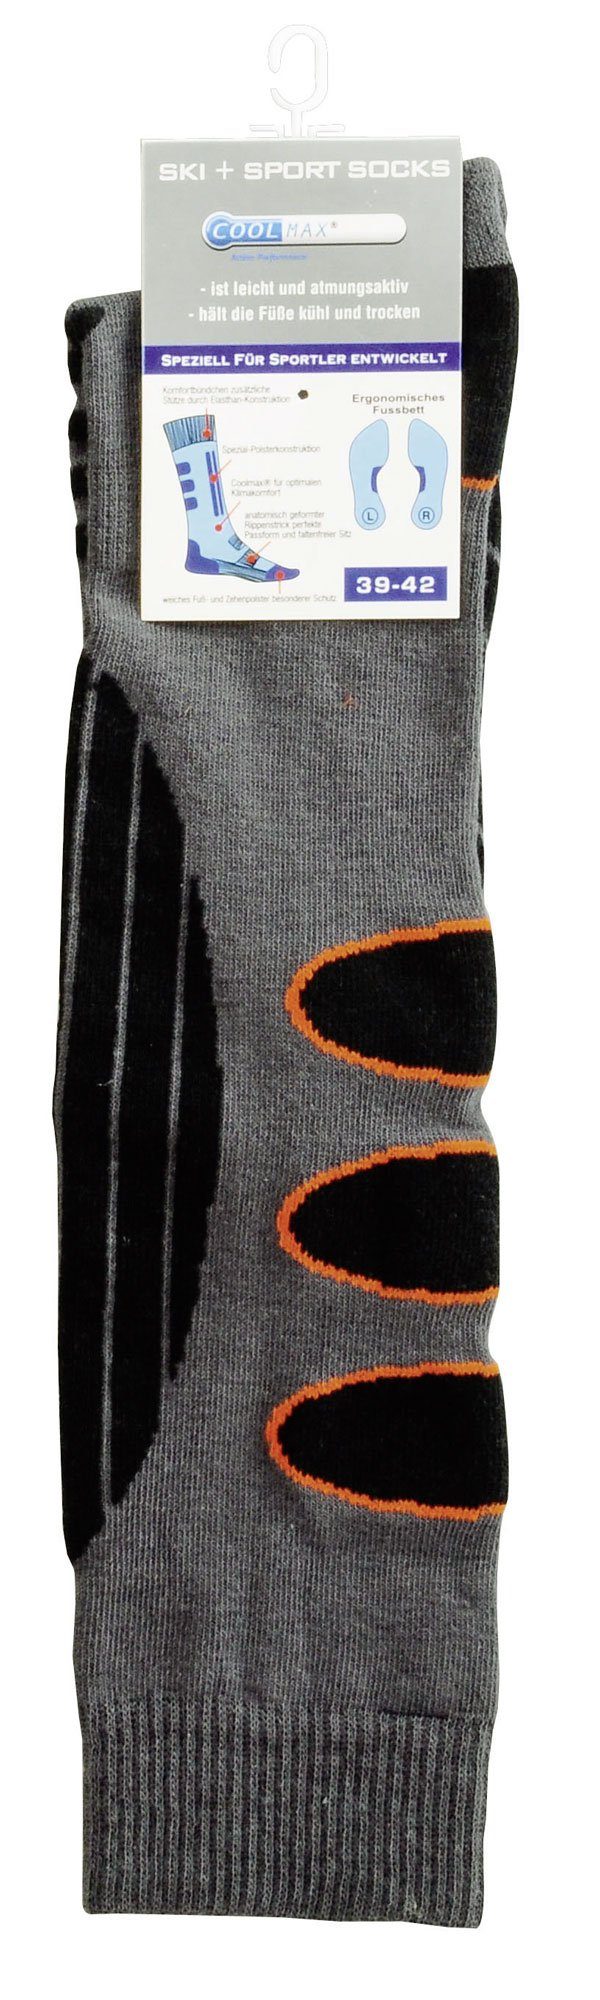 Grau-Orange mit Spezialpolsterung Coolmax Skisocken Skisocken 2 Paar PistenSauser Snowboard-Socken